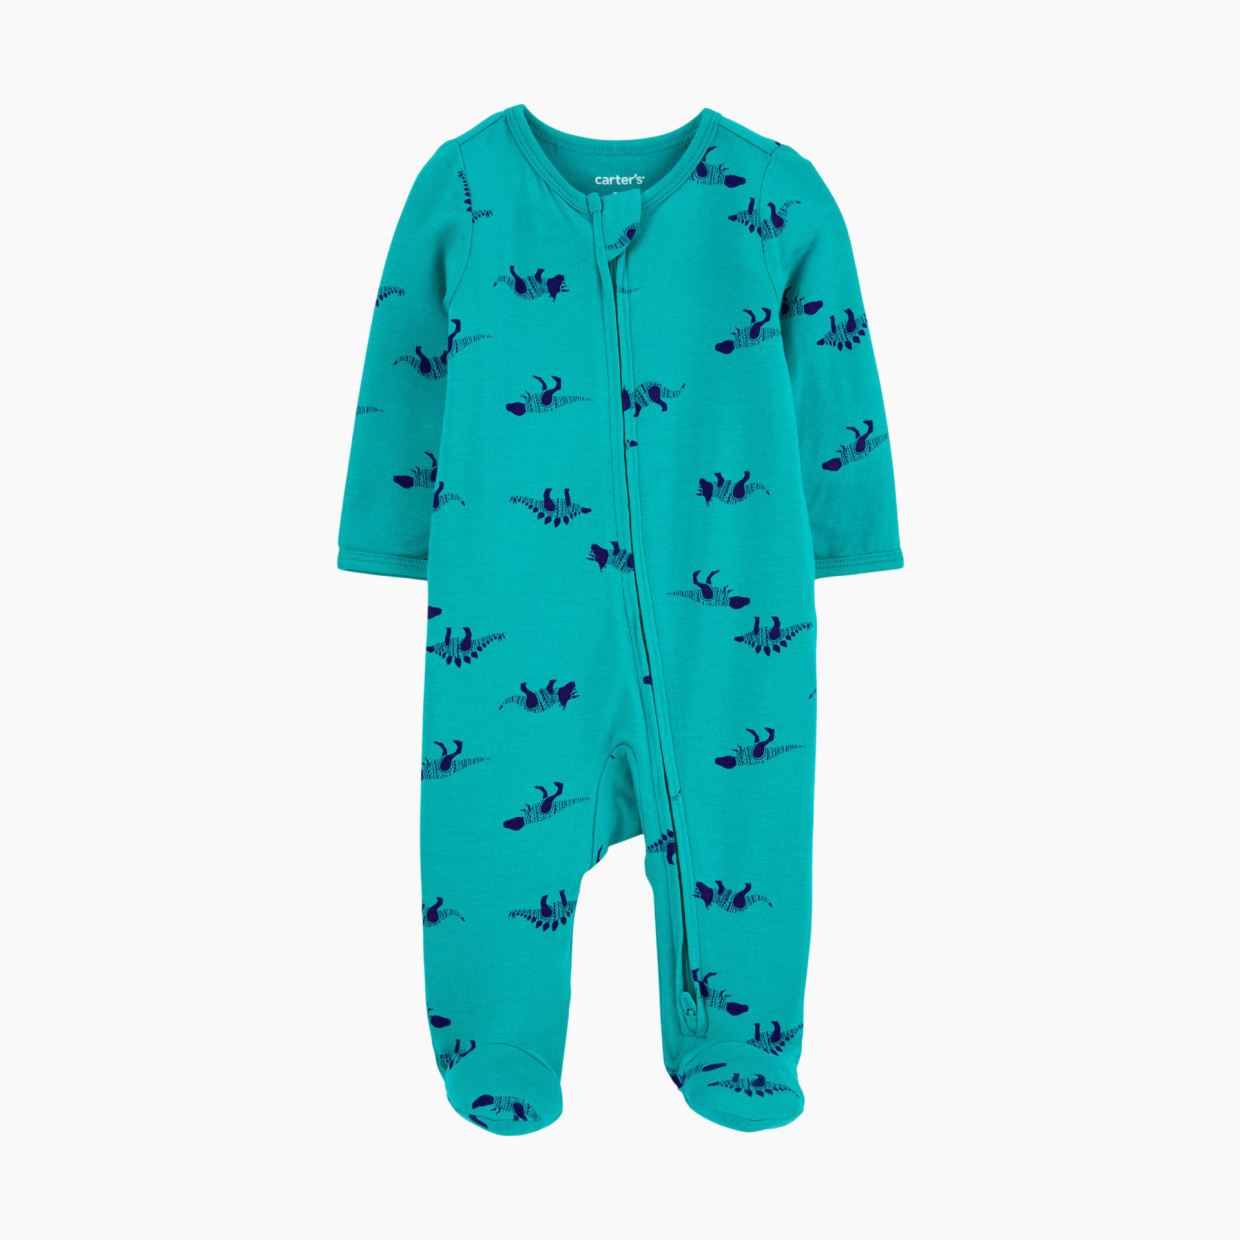 Carter's 2-Way Zip Lenzing Ecovera Sleep & Play Pajamas - Blue Dino, 6 M.